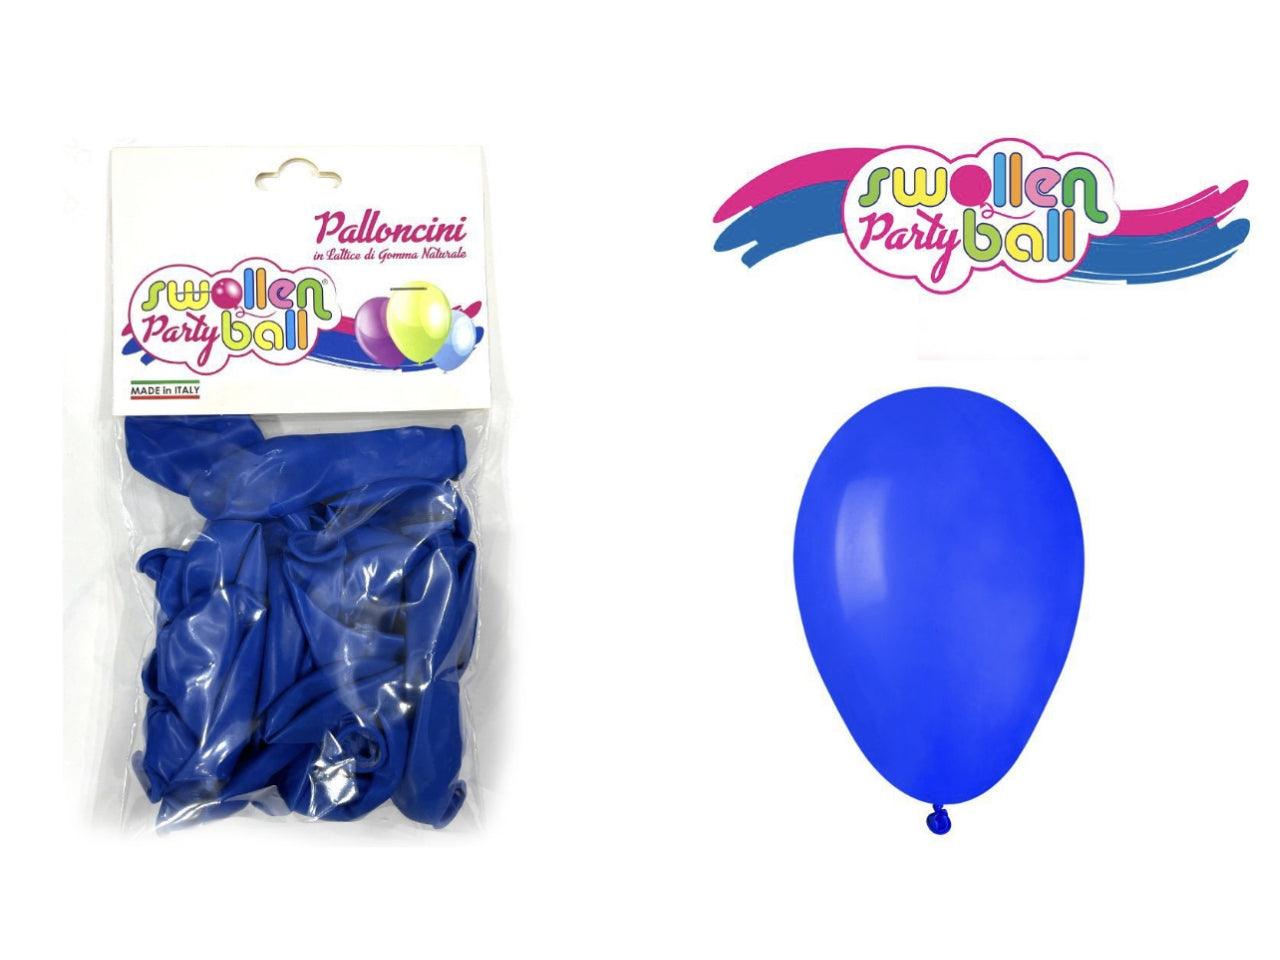 Palloncini in gomma la confezione contiene 40 palloncini blu